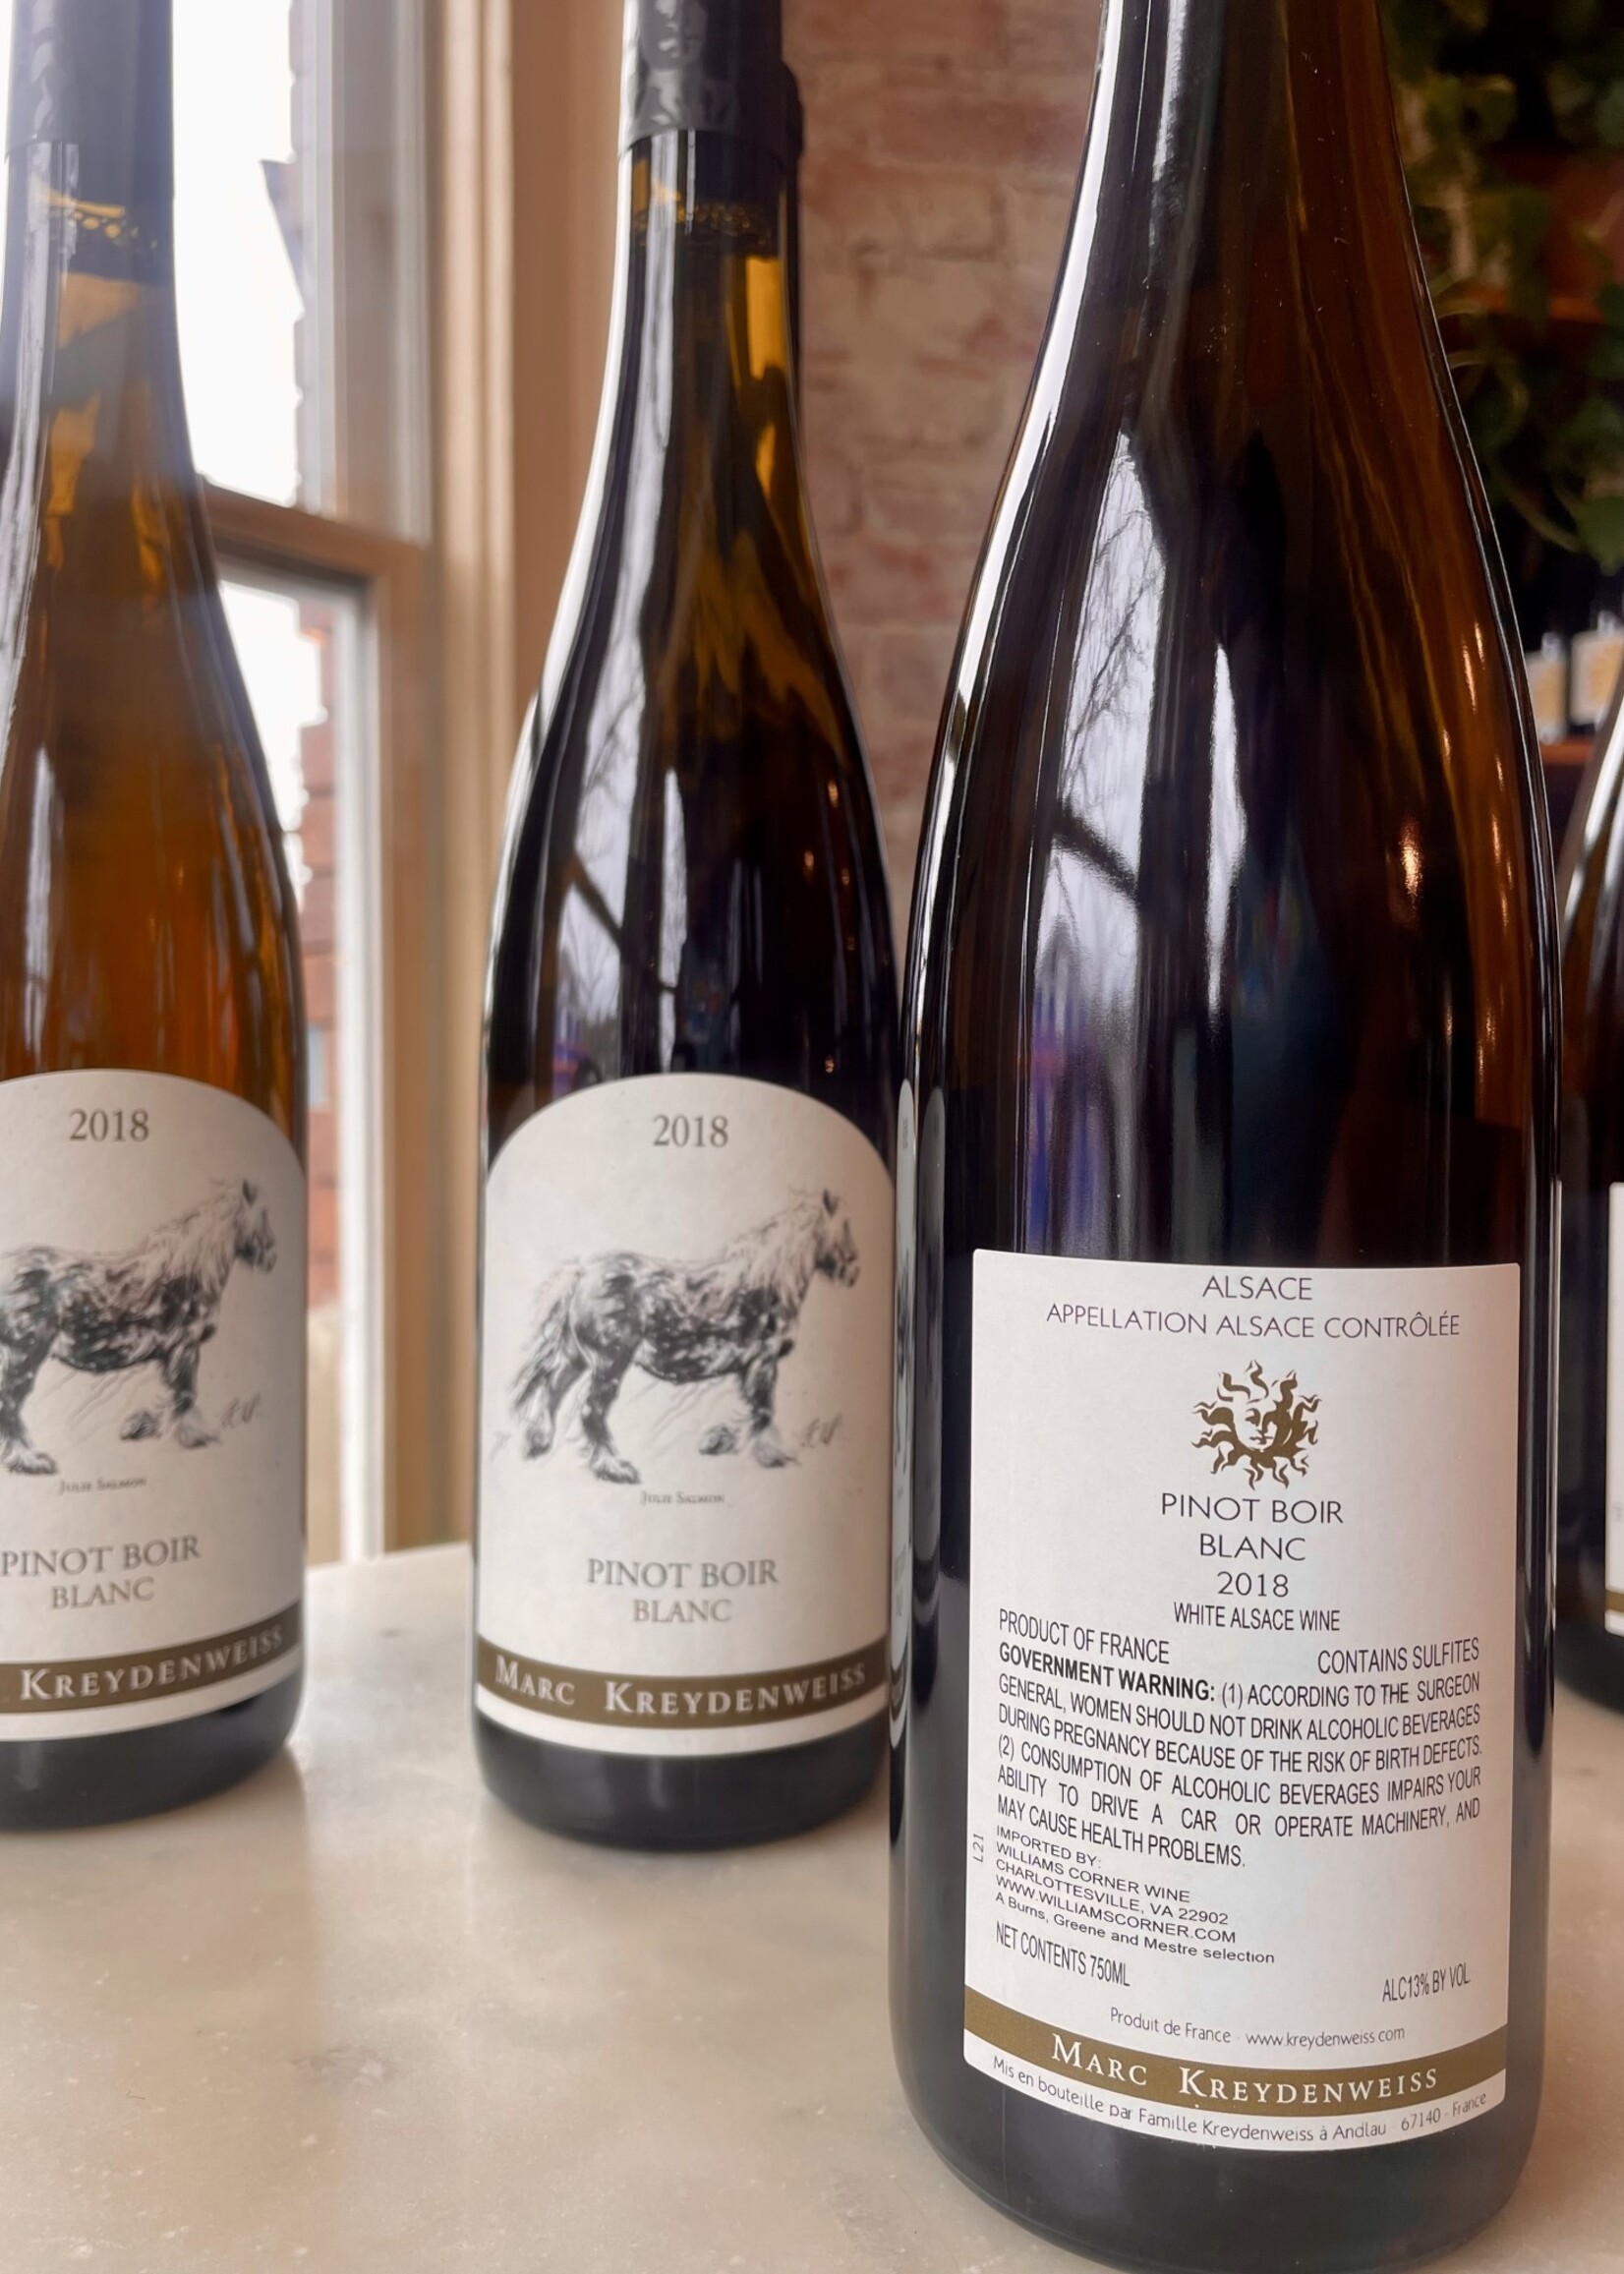 Marc Kreydenweiss, Pinot Boir Alsace Blanc, France 2018